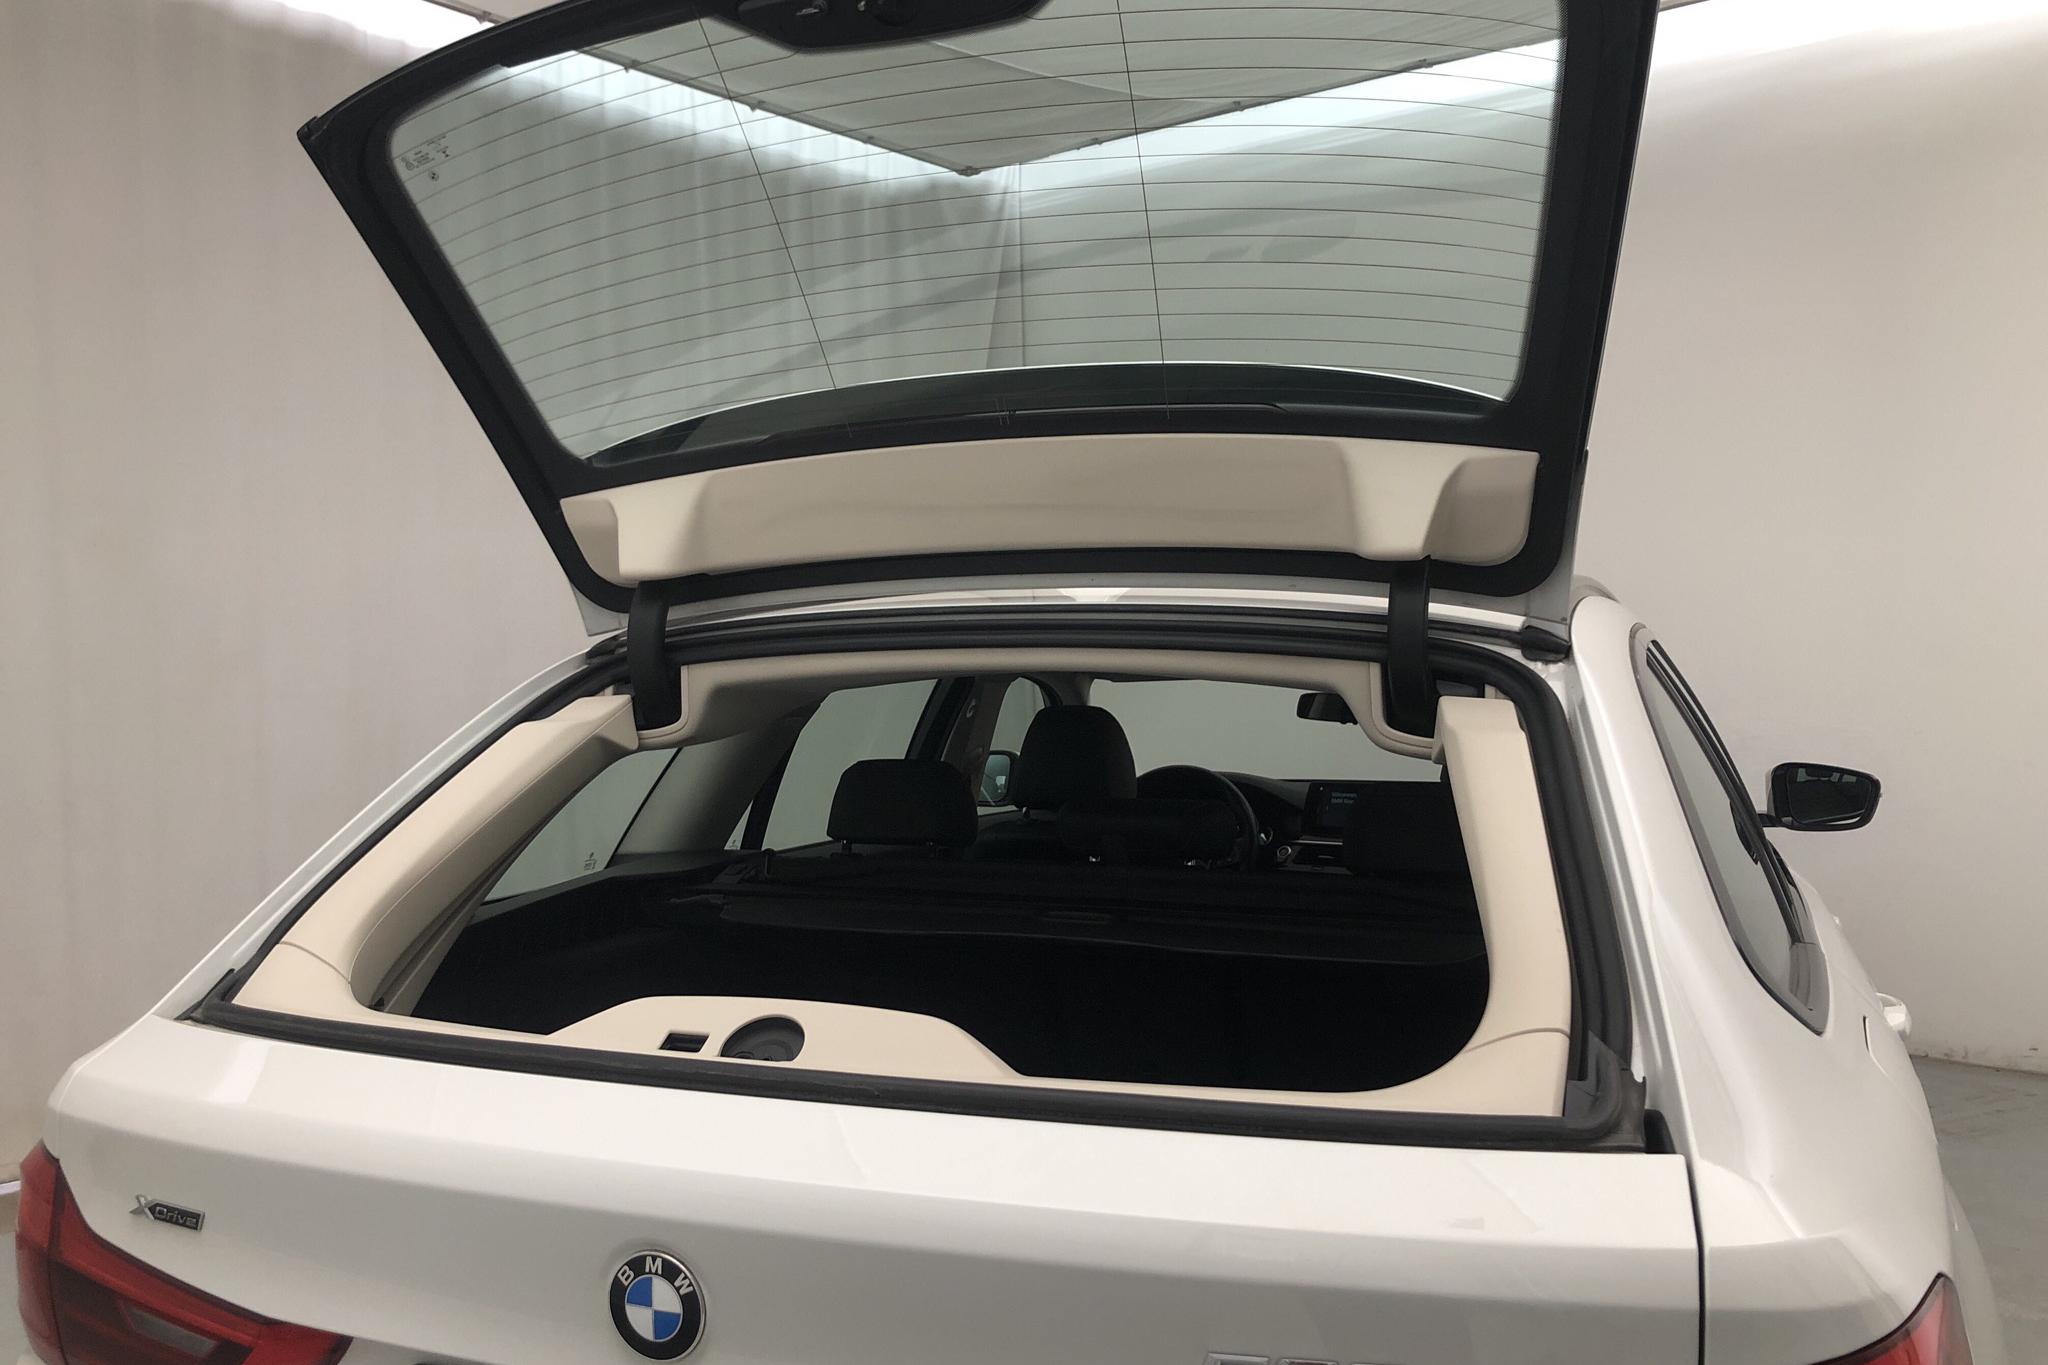 BMW 520d xDrive Touring, G31 (190hk) - 10 271 mil - Automat - vit - 2019